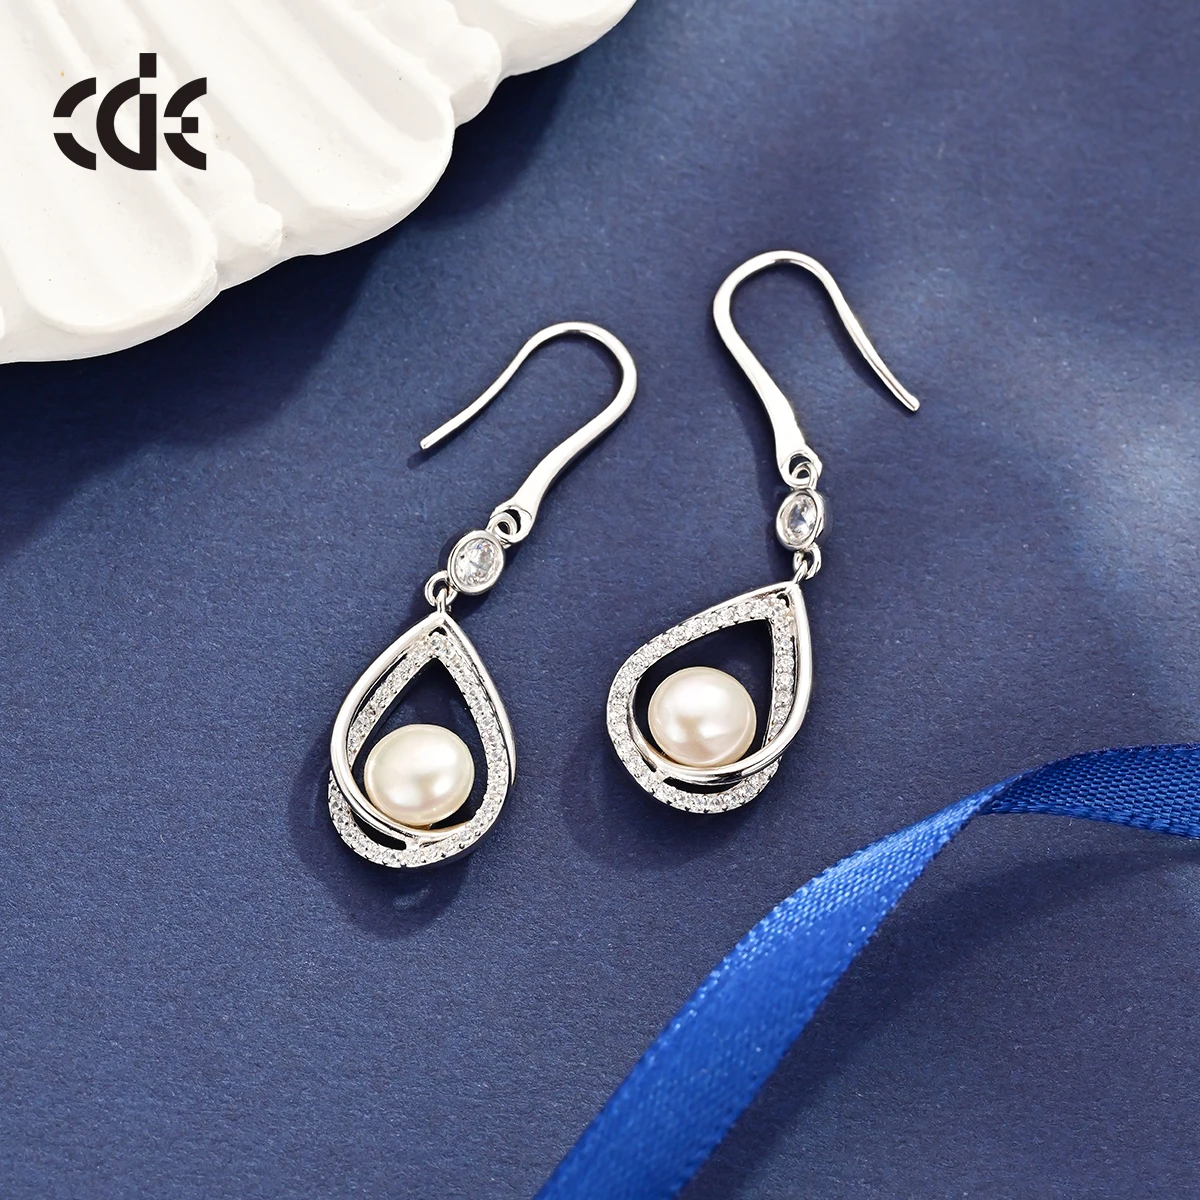 CDE PRYE003 Fine Jewelry 925 Sterling Silver Minimalist Earrings Rhodium Plated Freshwater Pearl Women Drop Earrings